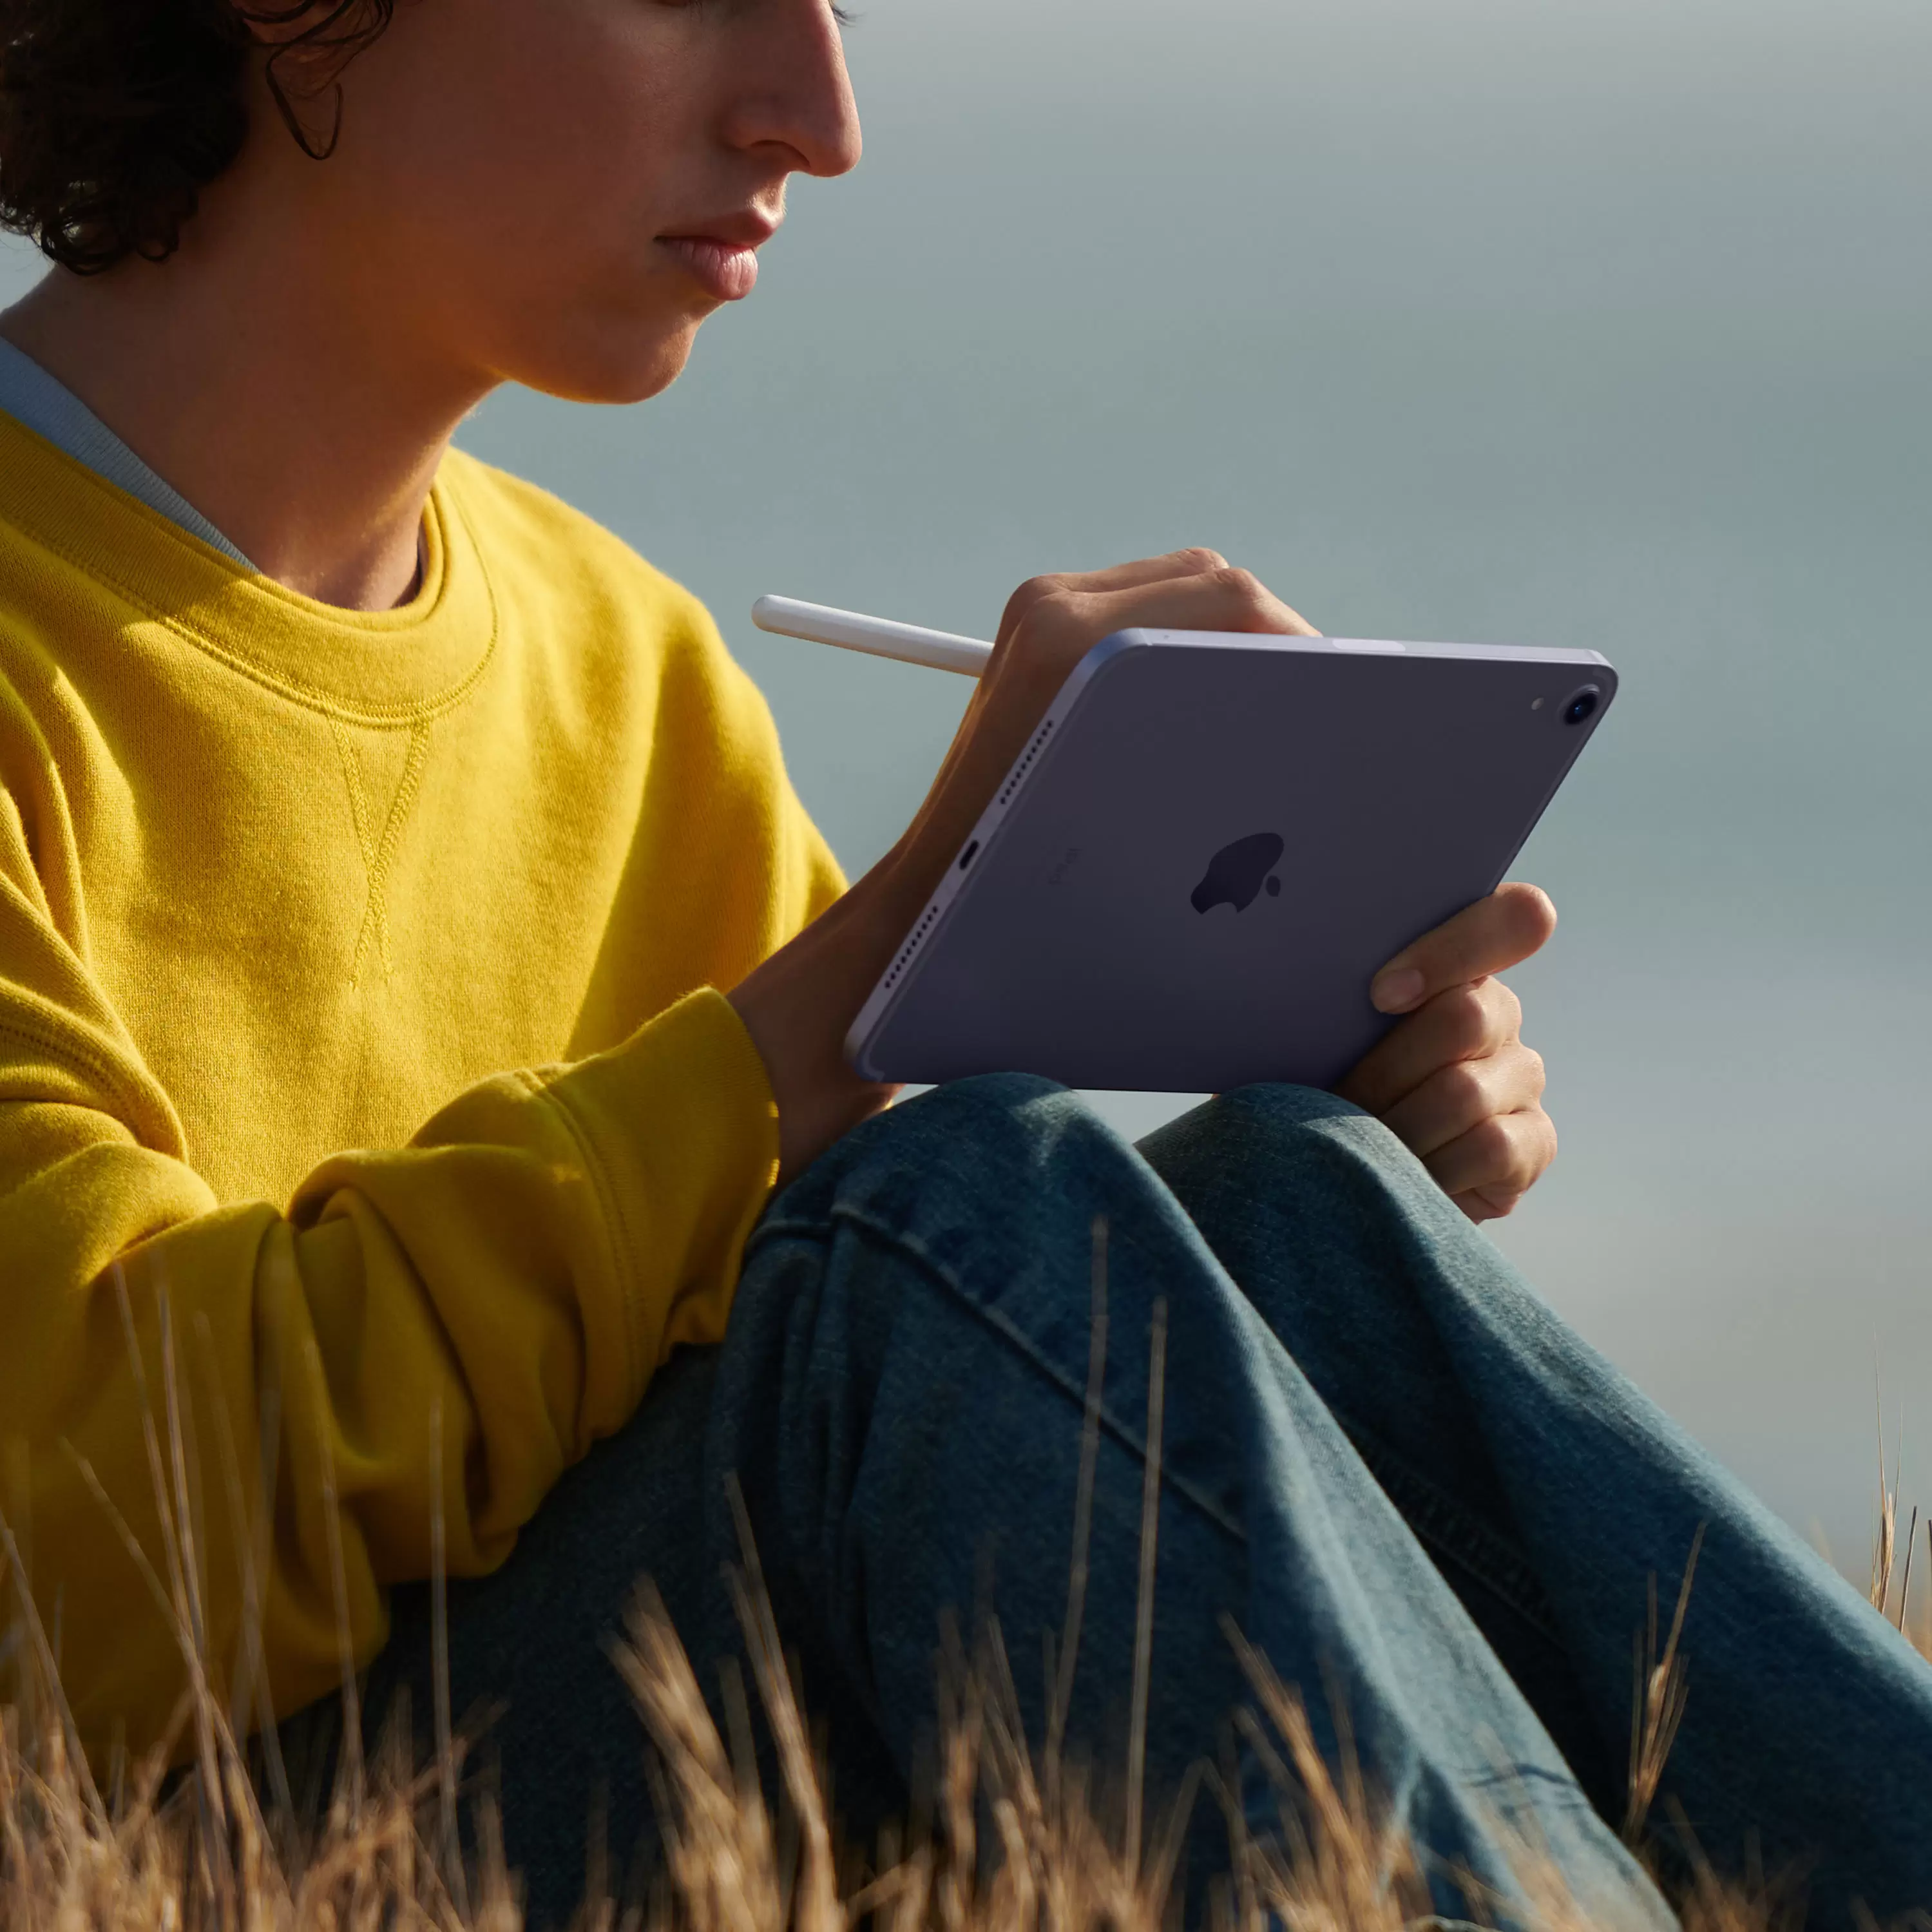 Apple iPad mini (2021) Wi-Fi 64GB (фиолетовый)